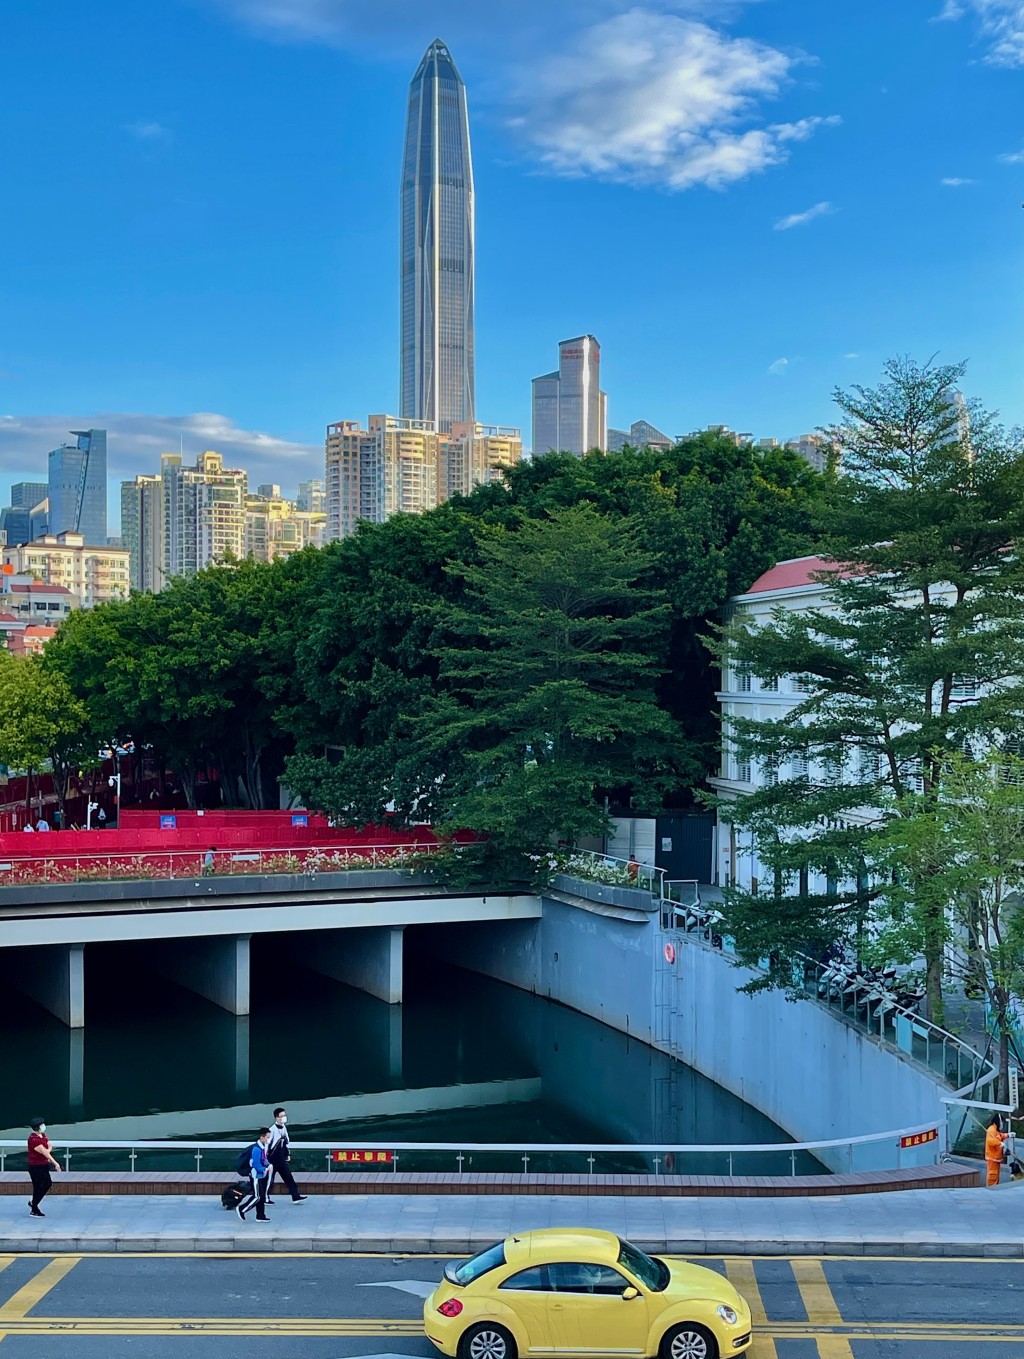 深圳城脉中心是当地的新地标。微博